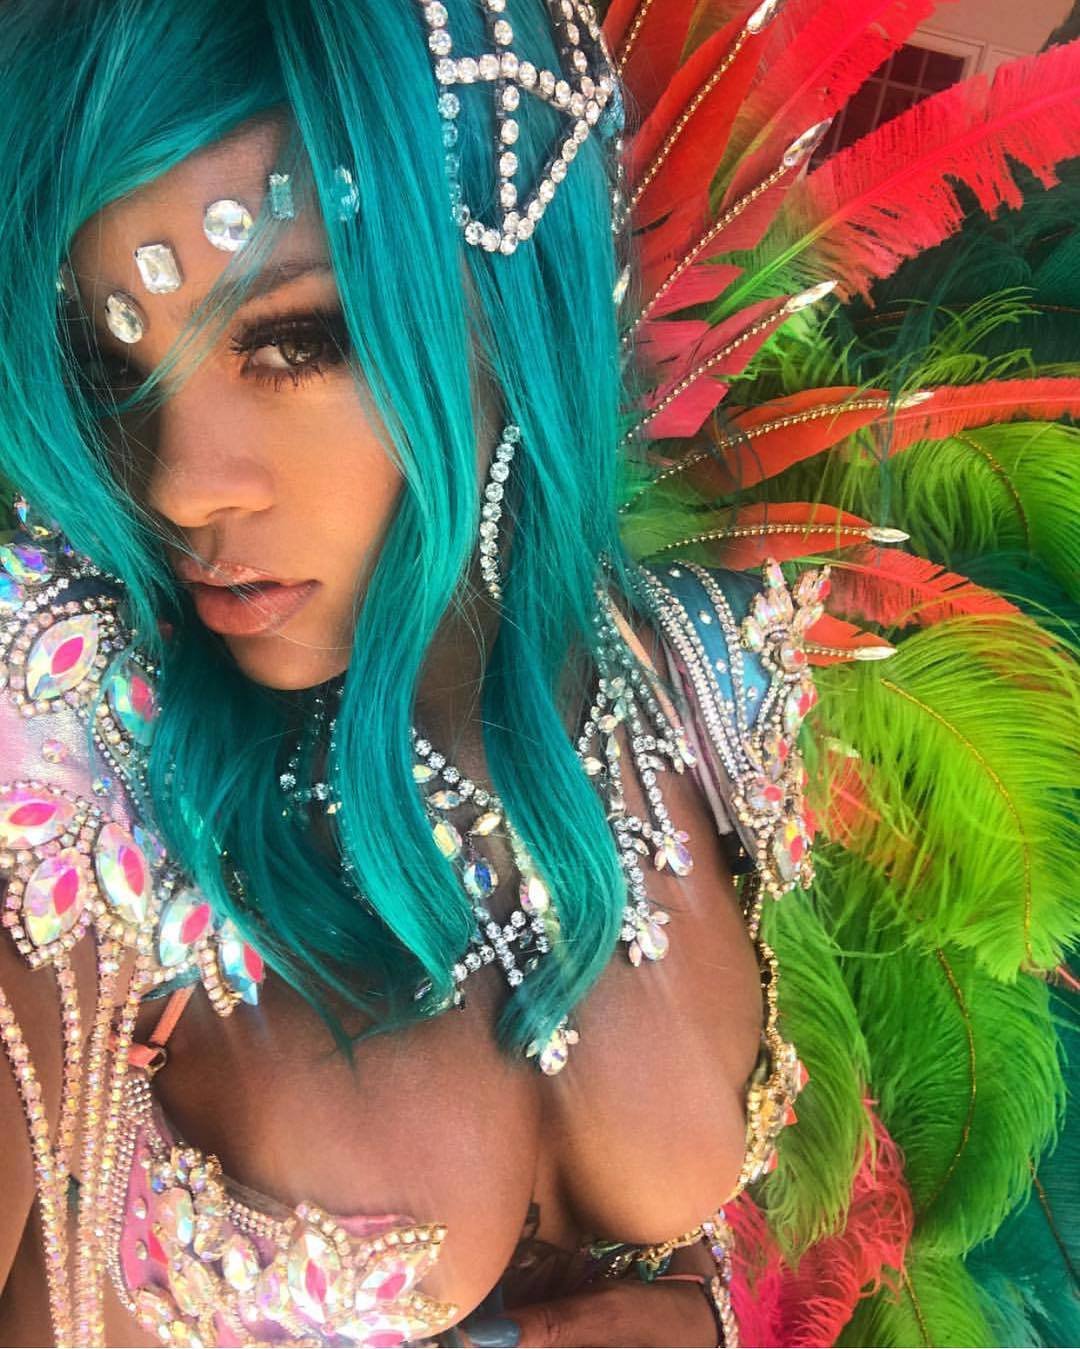 Rihanna řádila na karnevalu na Barbadosu téměr nahá. Odvážný kostým nezakrýval skoro nic.Rihanna řádila na karnevalu na Barbadosu téměr nahá. Odvážný kostým nezakrýval skoro nic.